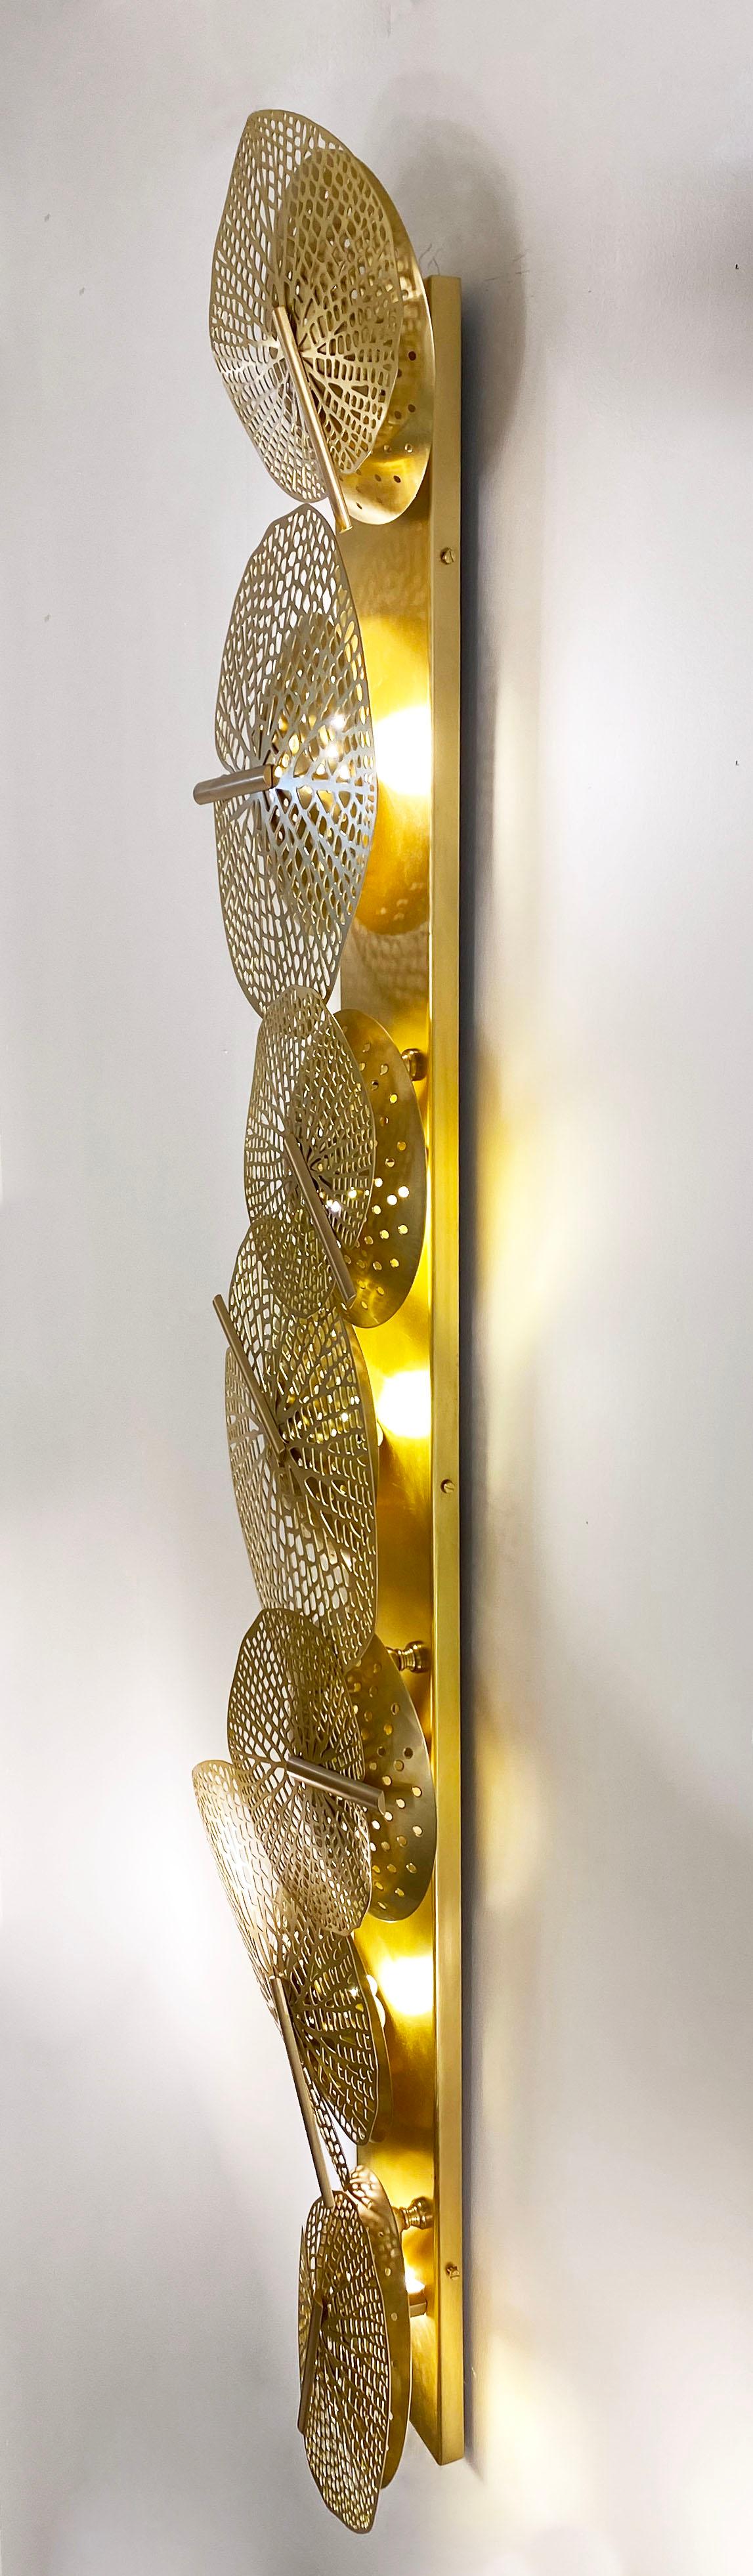 XXIe siècle et contemporain Monumental Italian Organic Art Design Modernity Perforated Brass Leaf Sconce (applique à feuilles en laiton perforé) en vente